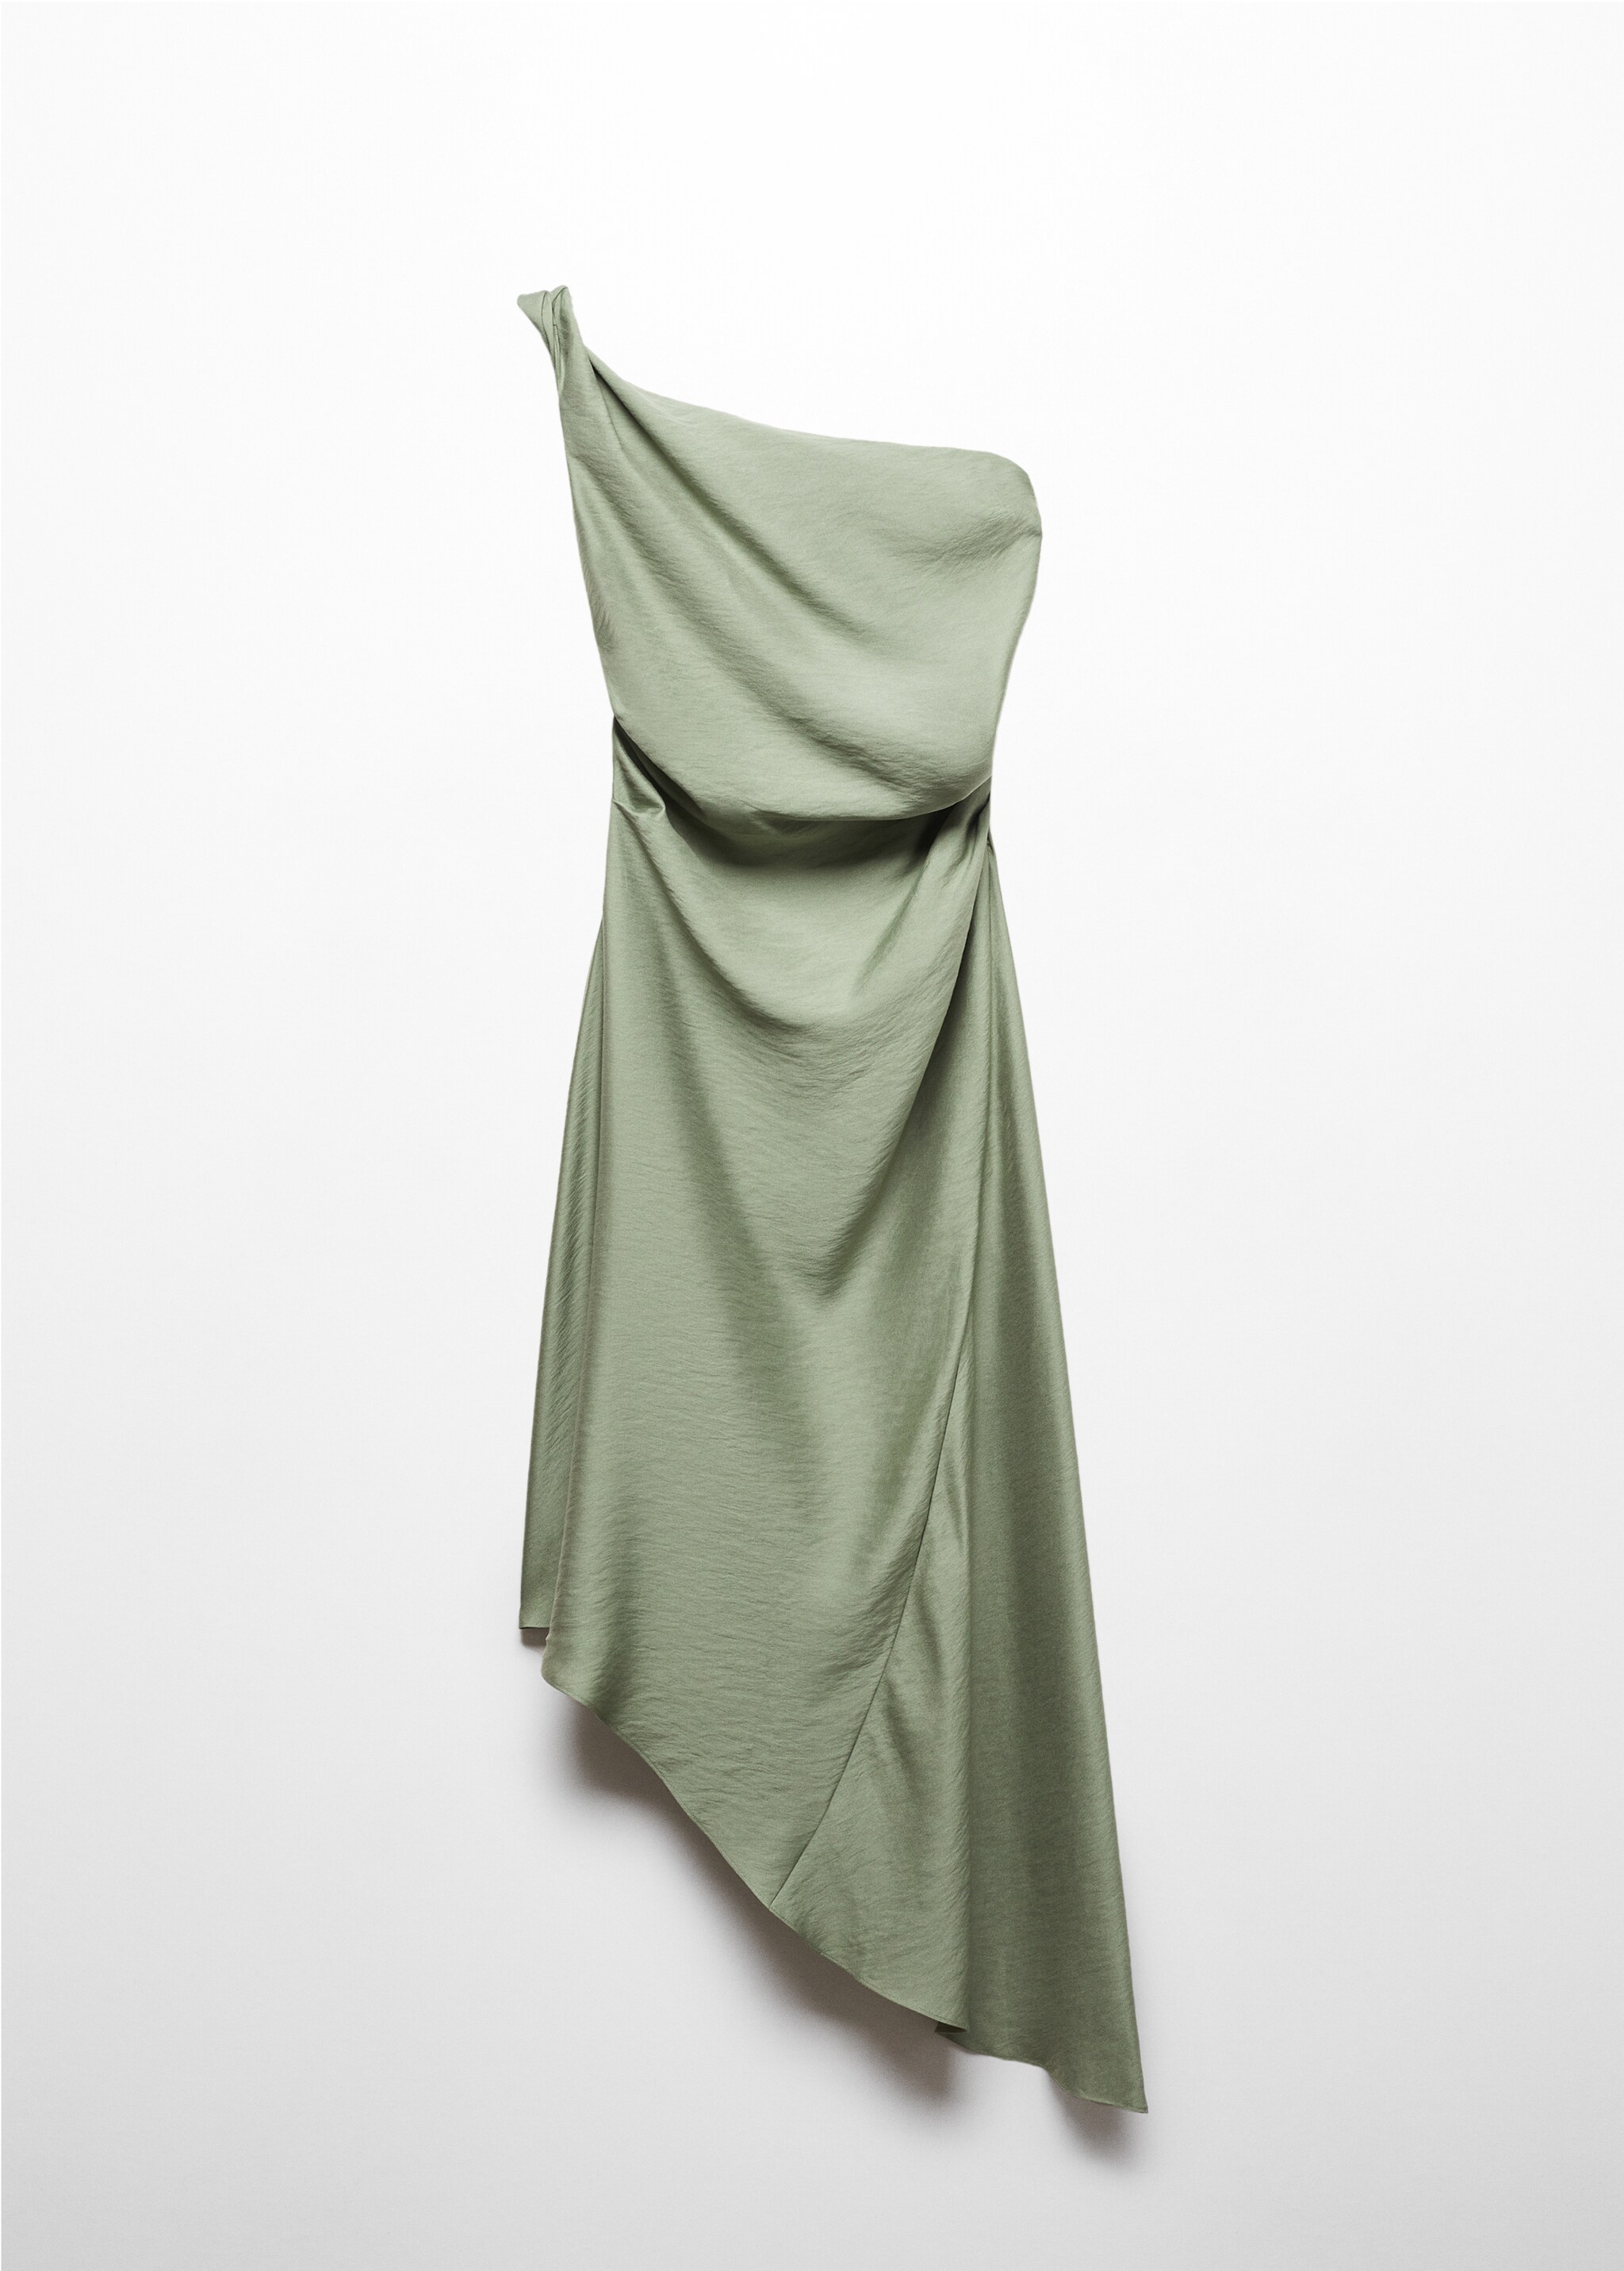 Φόρεμα ασύμμετρο με σούρες - Προϊόν χωρίς μοντέλο